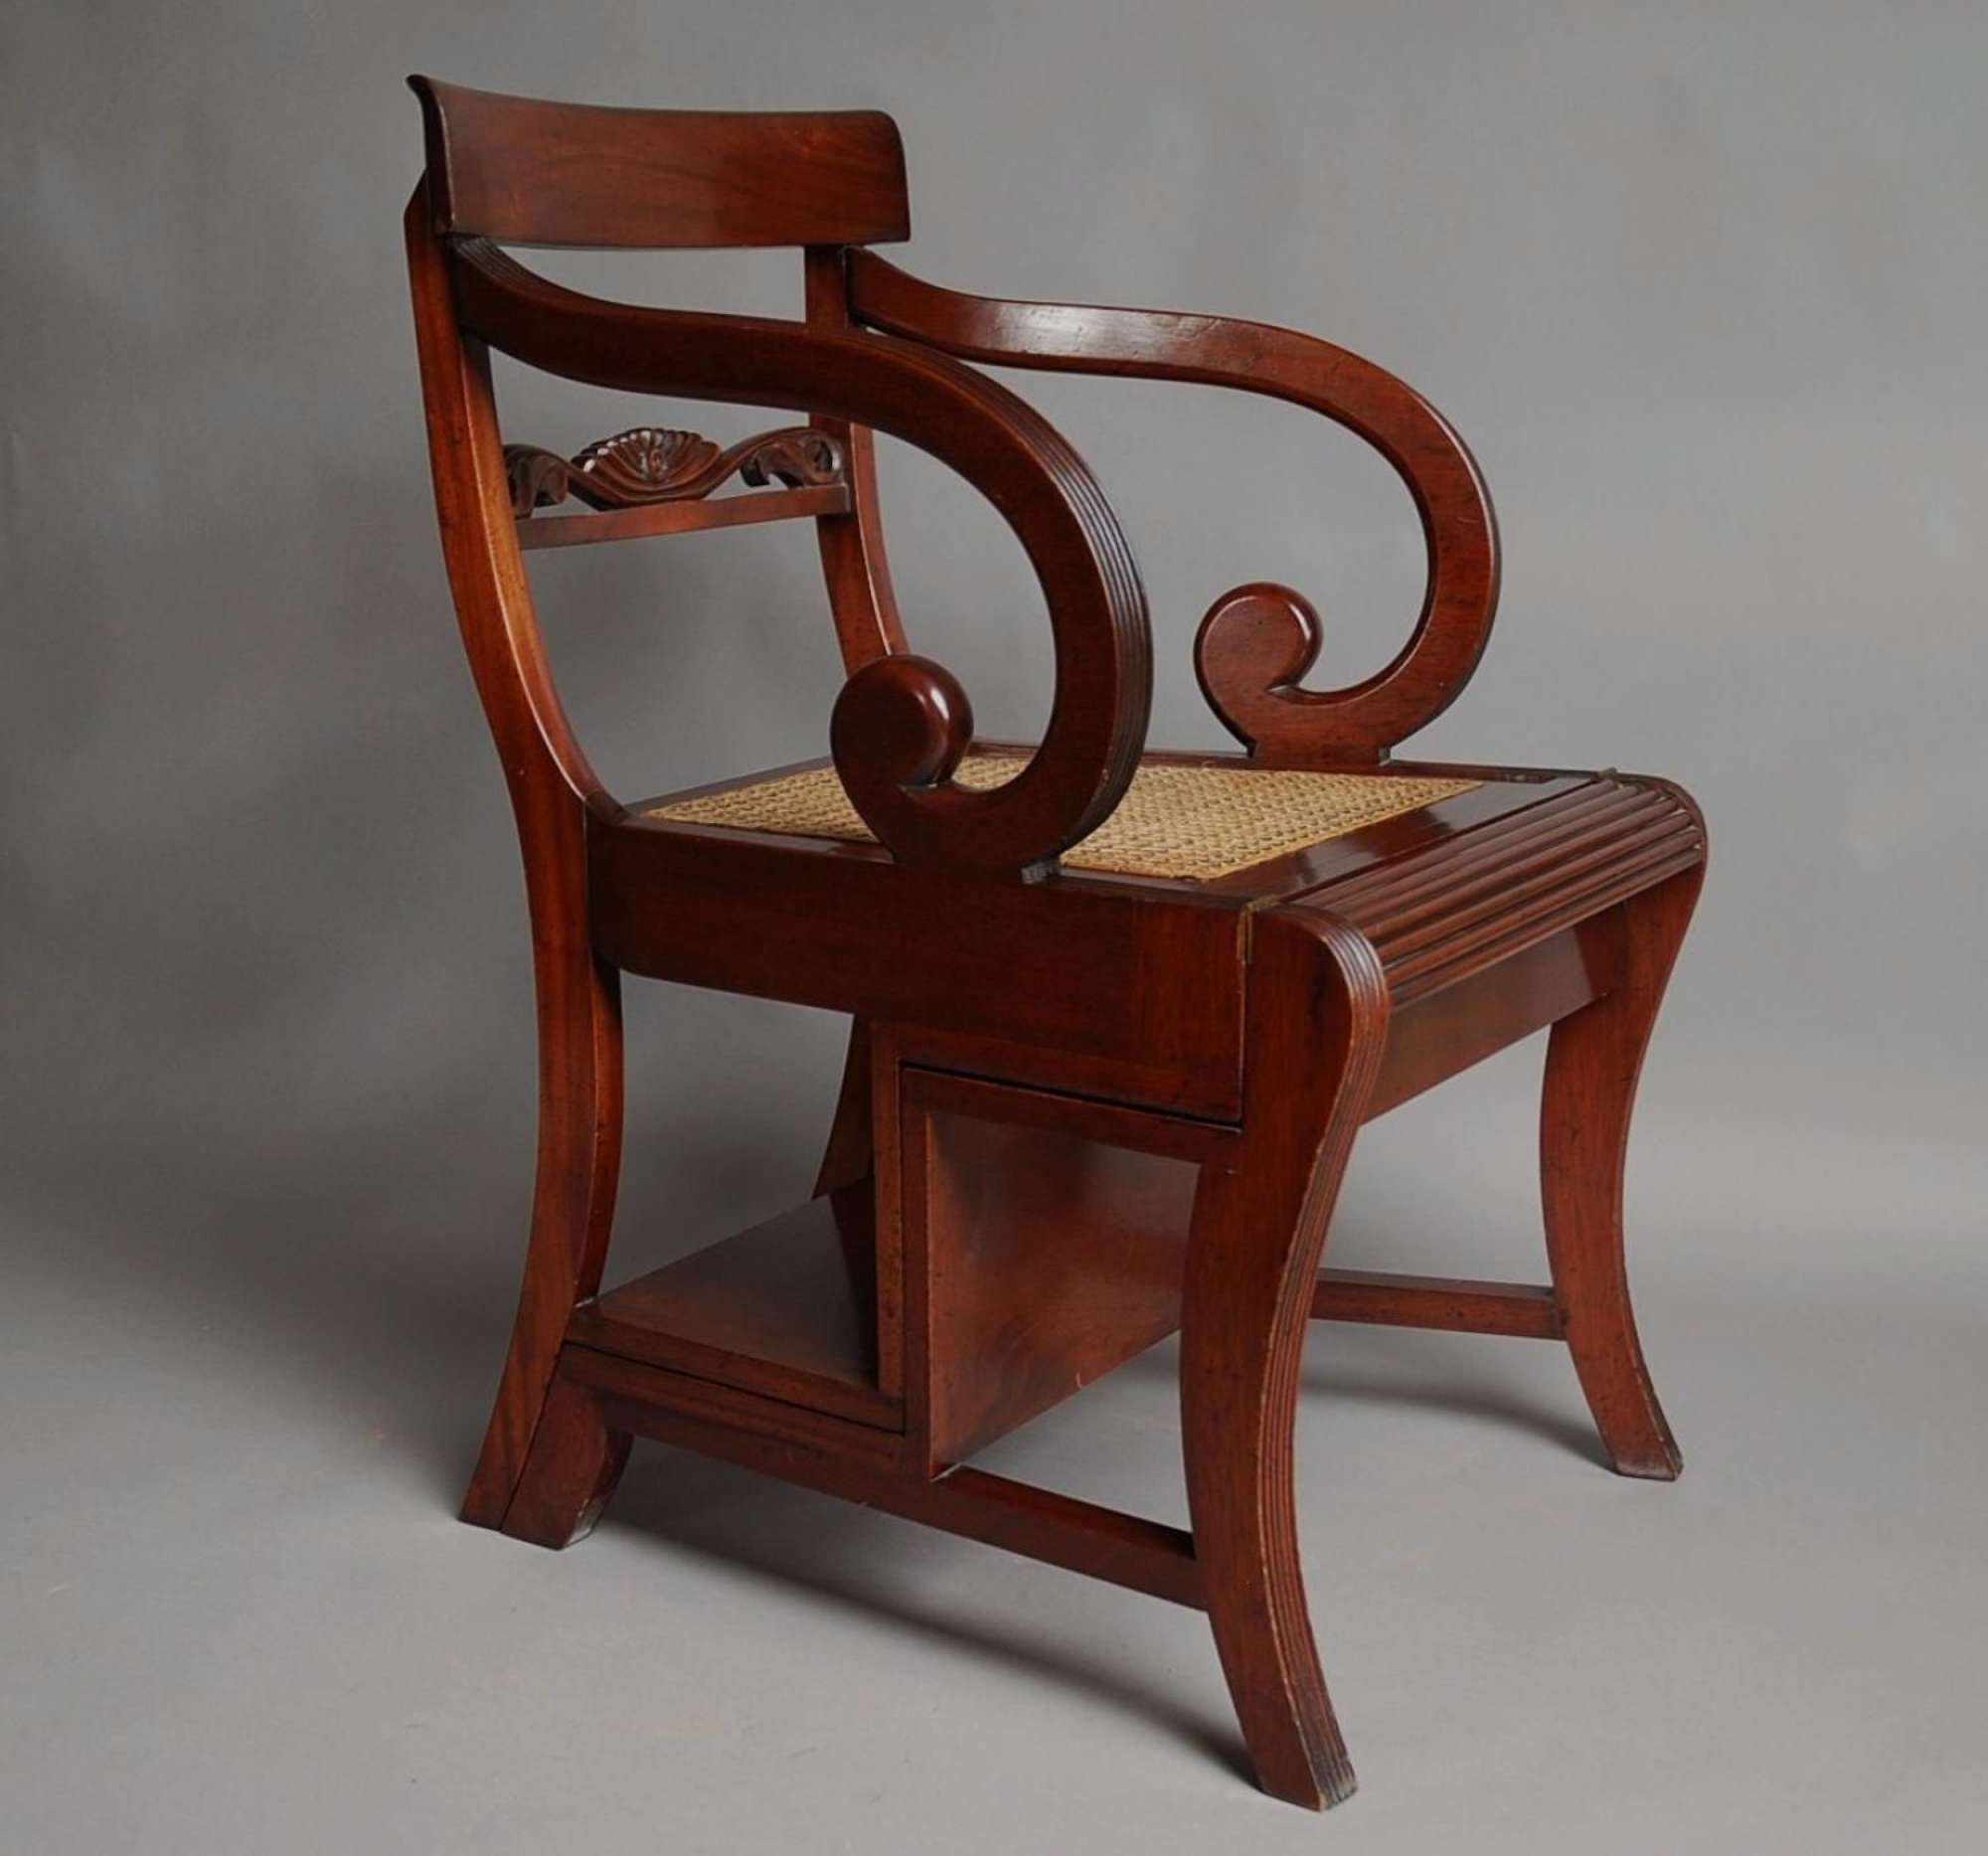 Regency style Metamorphic chair